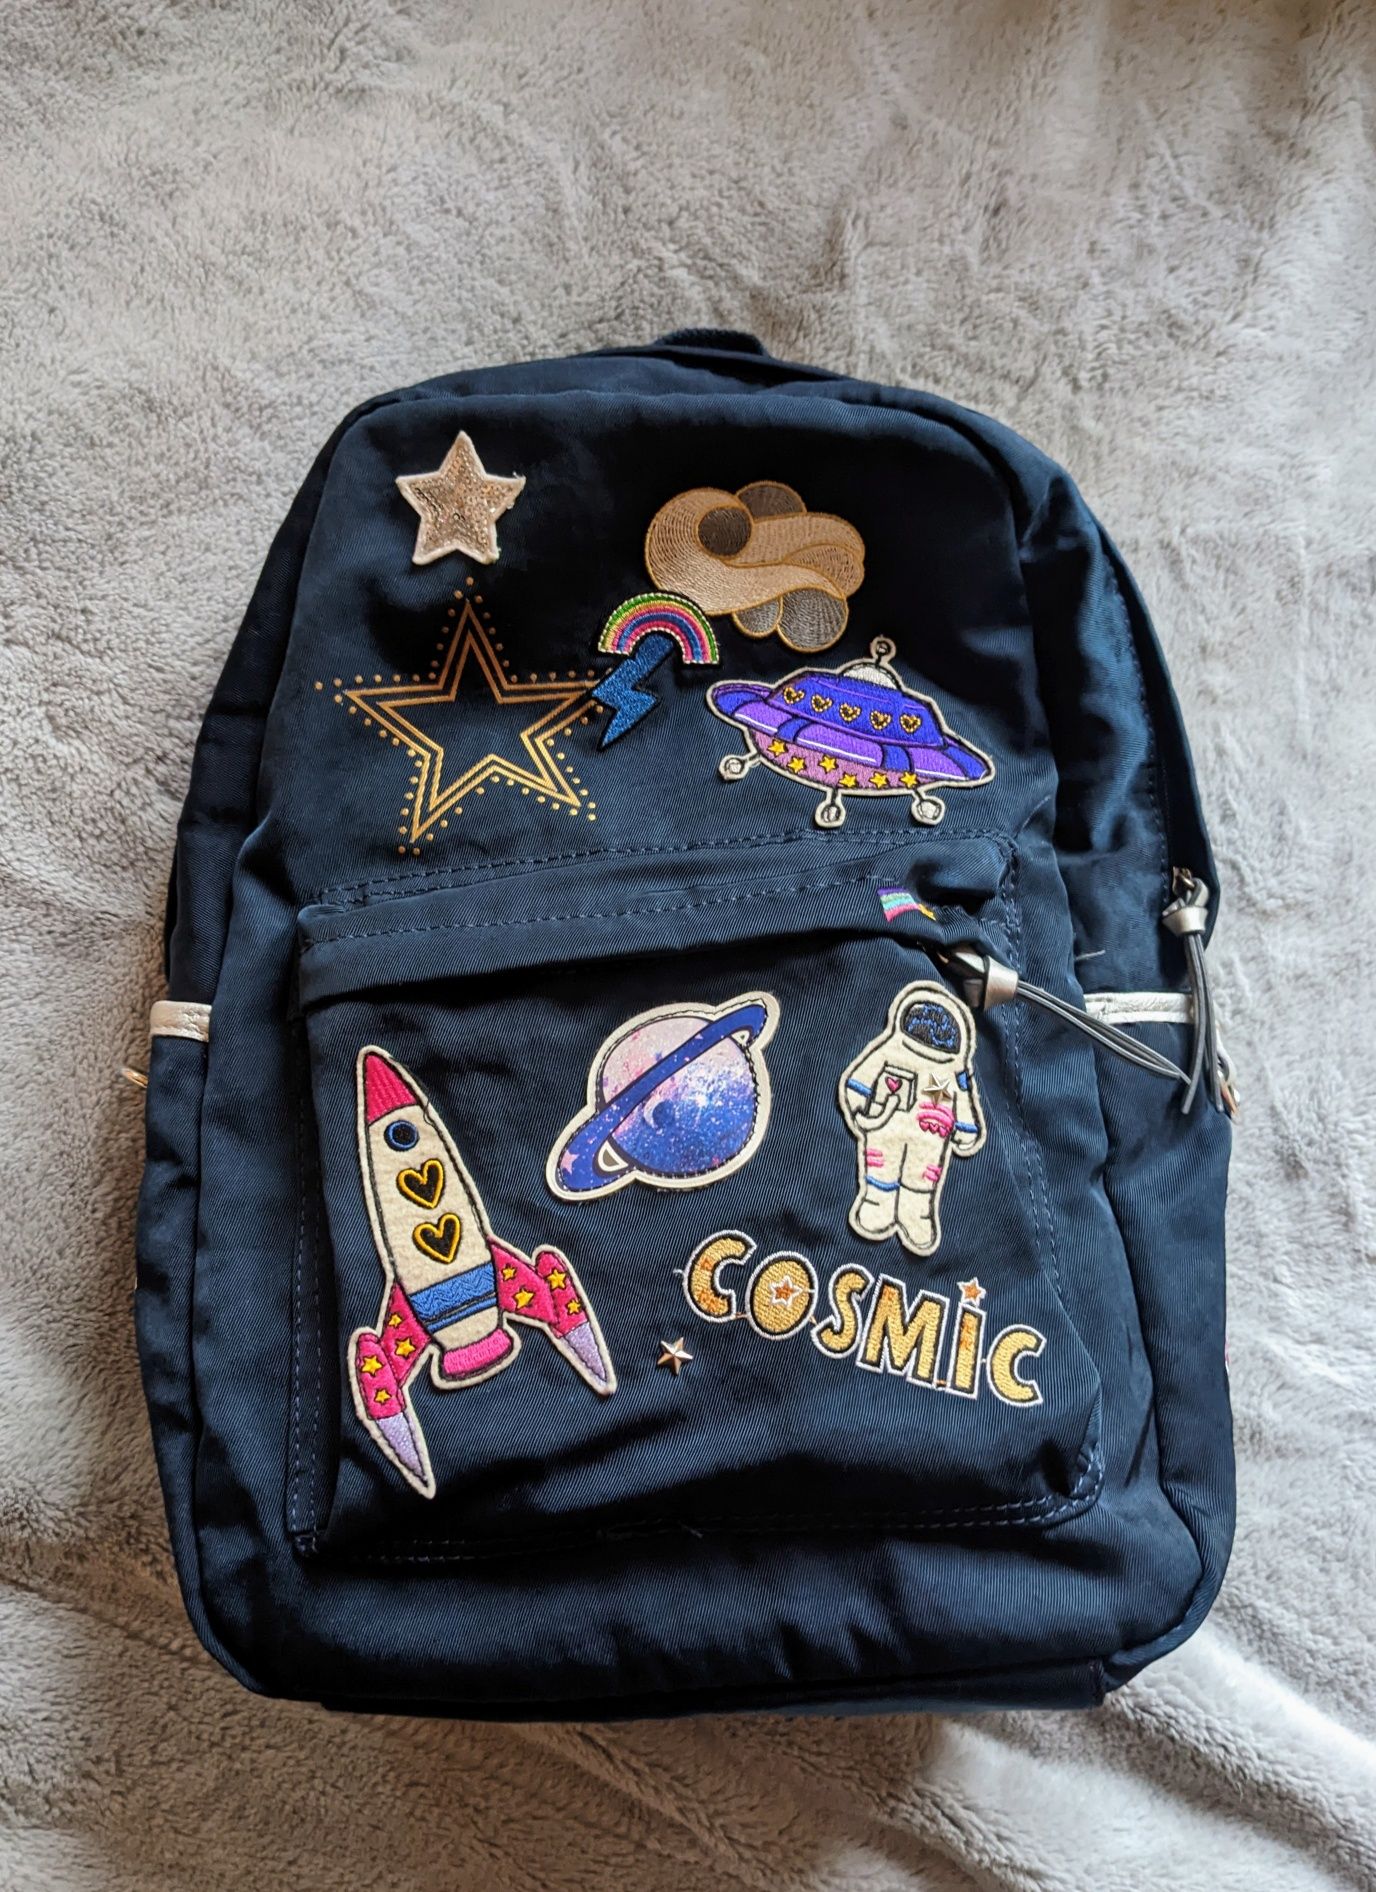 Śliczny plecak Cosmic